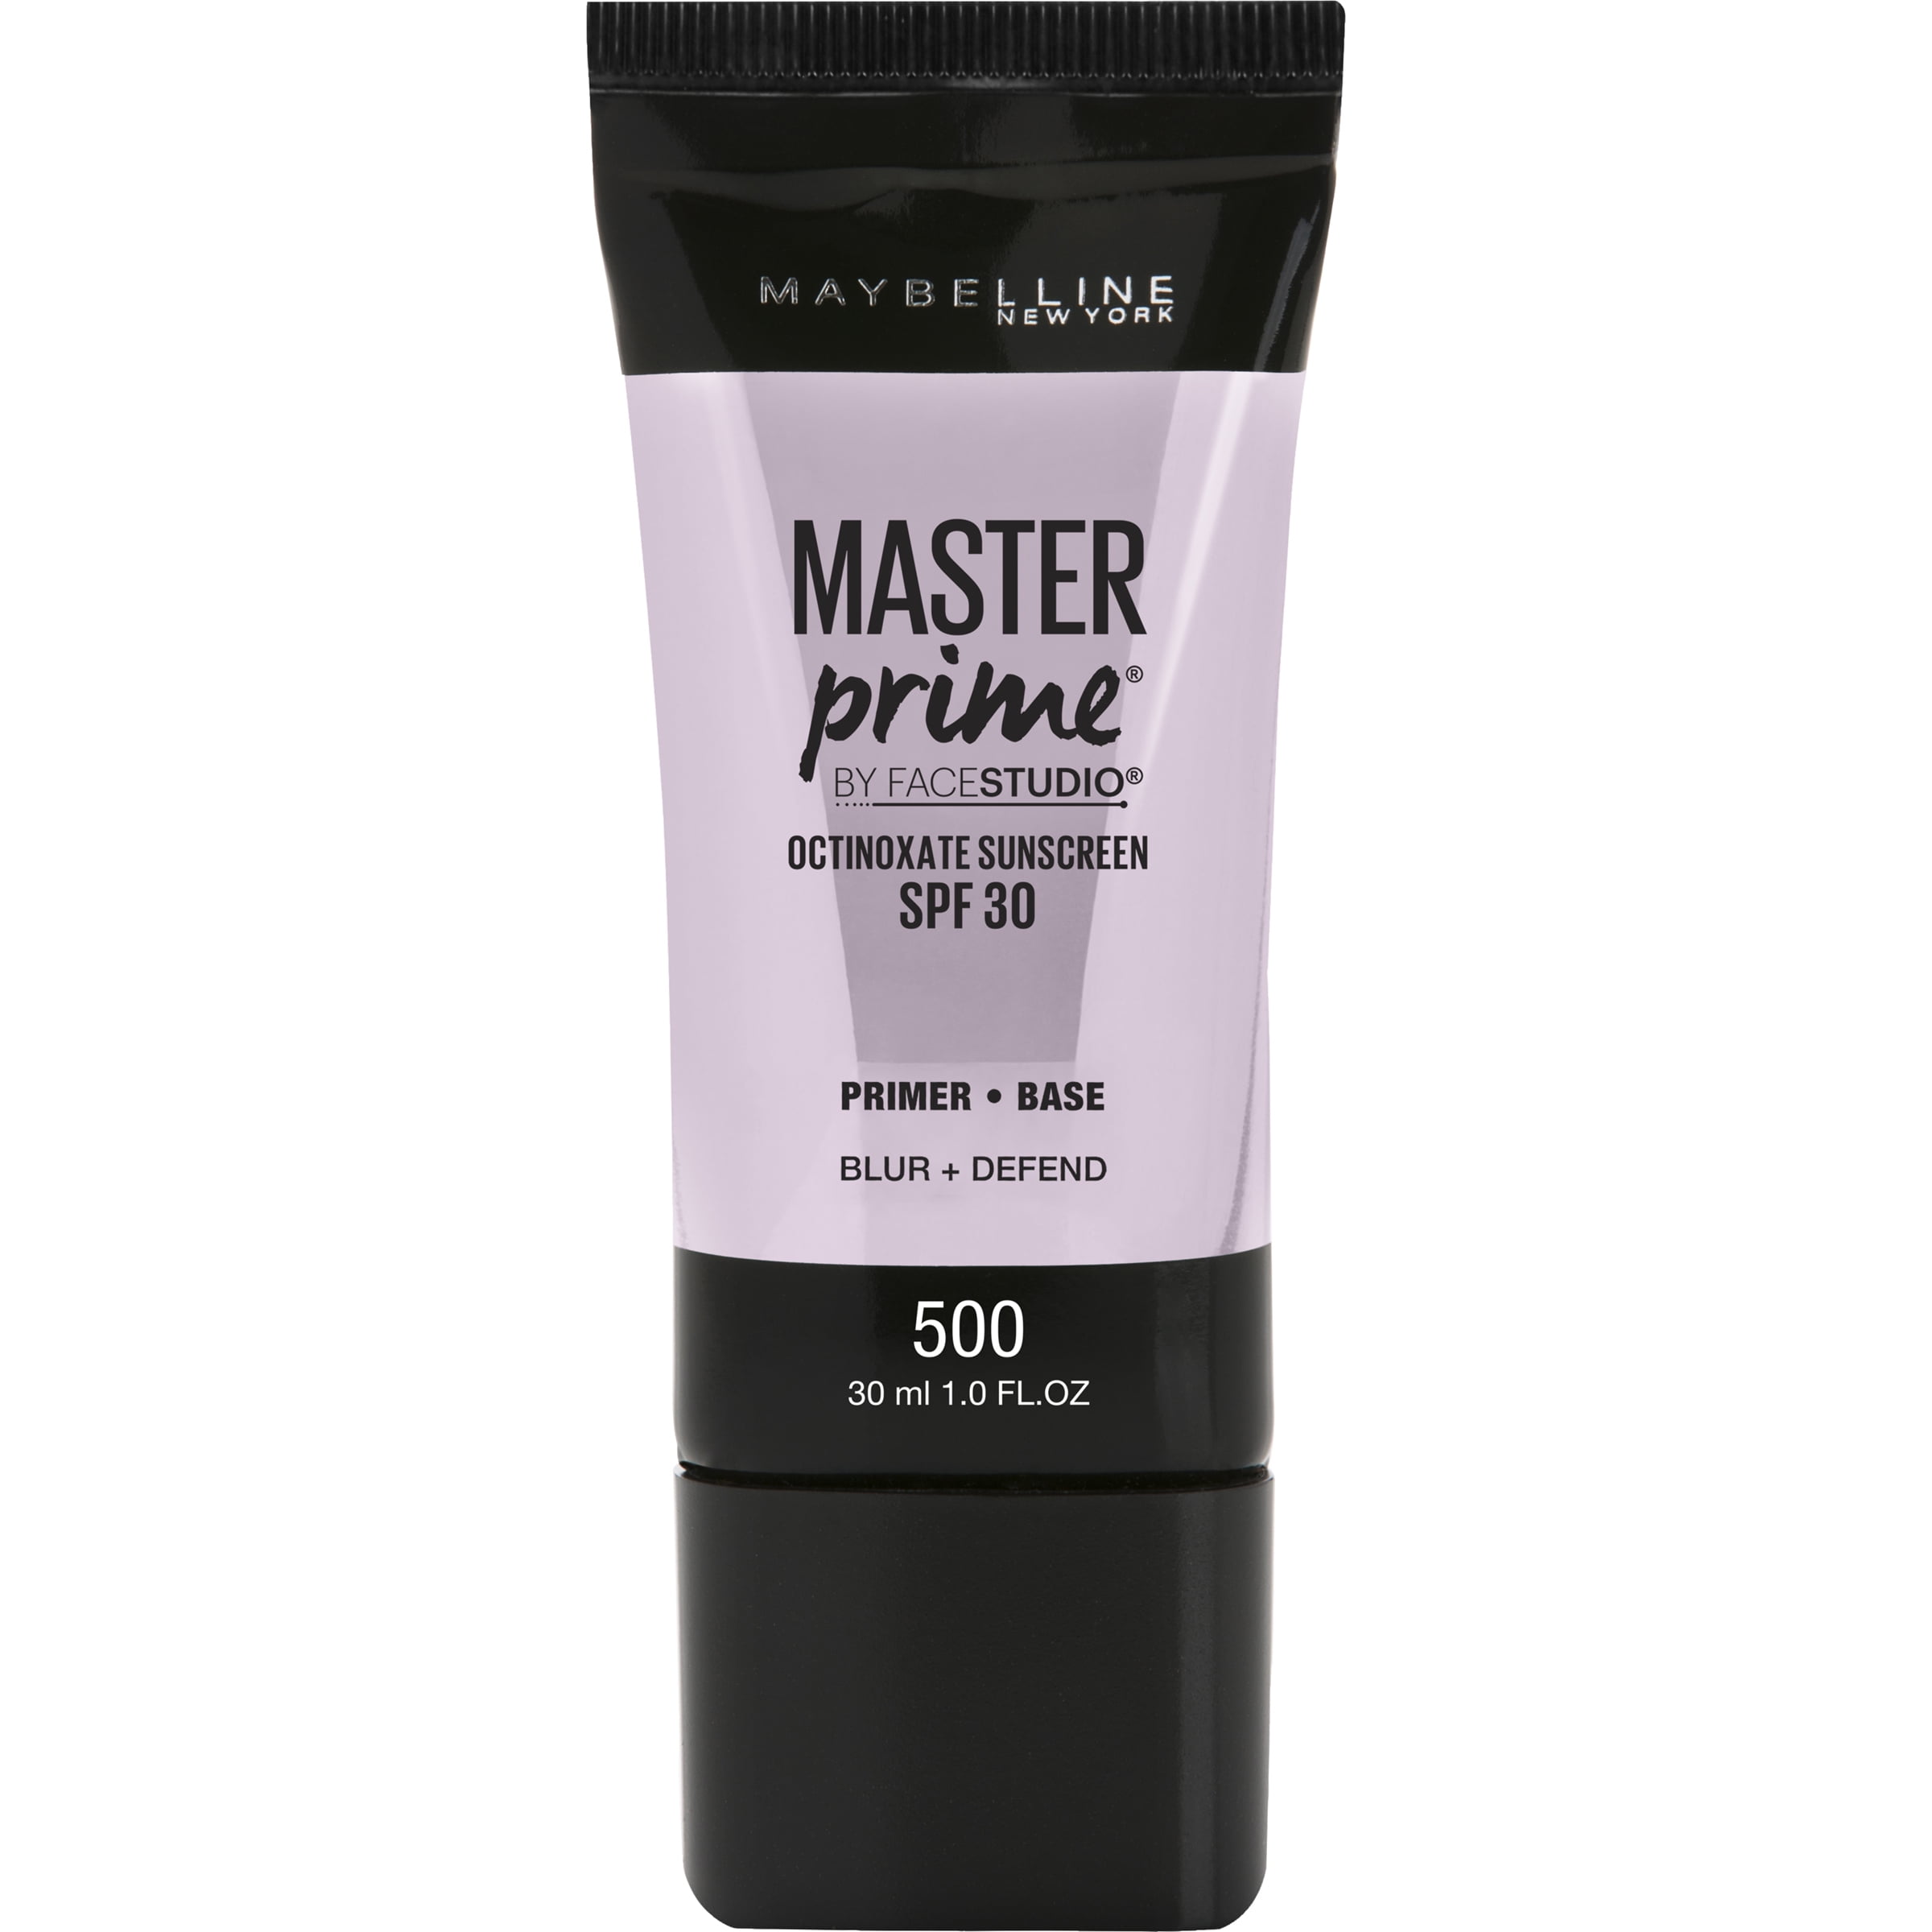 Maybelline Facestudio Master Prime Primer Makeup, Blur+ Defend, 1 fl oz